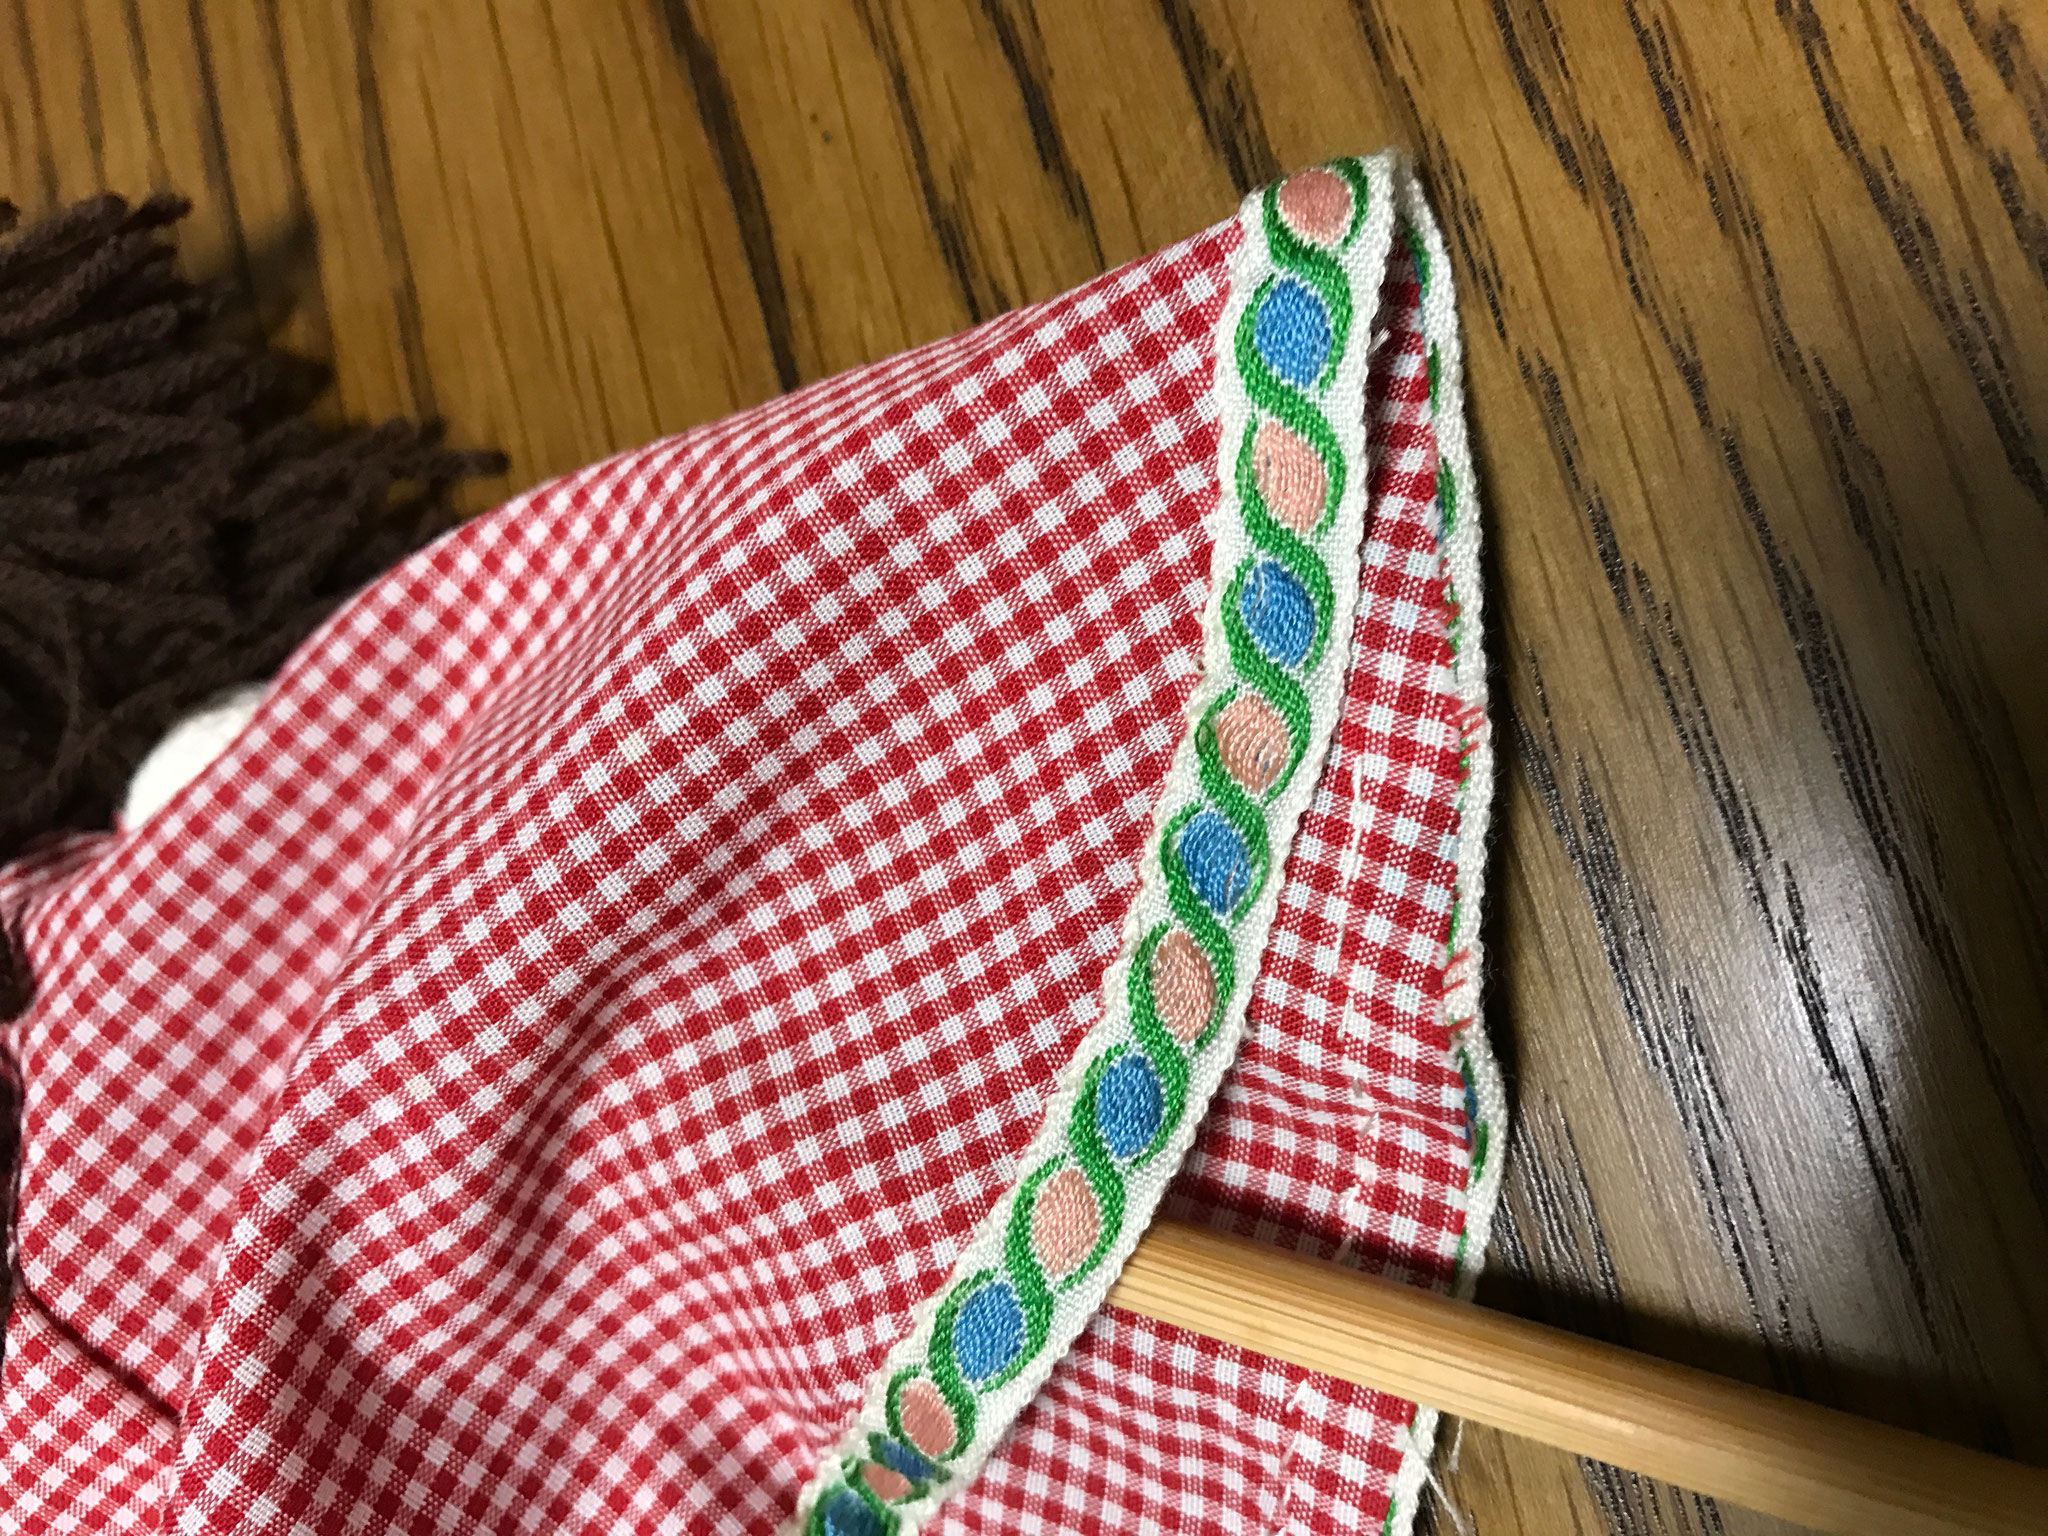 裾は織り込んで縫うよりも、チロリアンテープを縫い付けて切りっぱなしにするほうが簡単です。